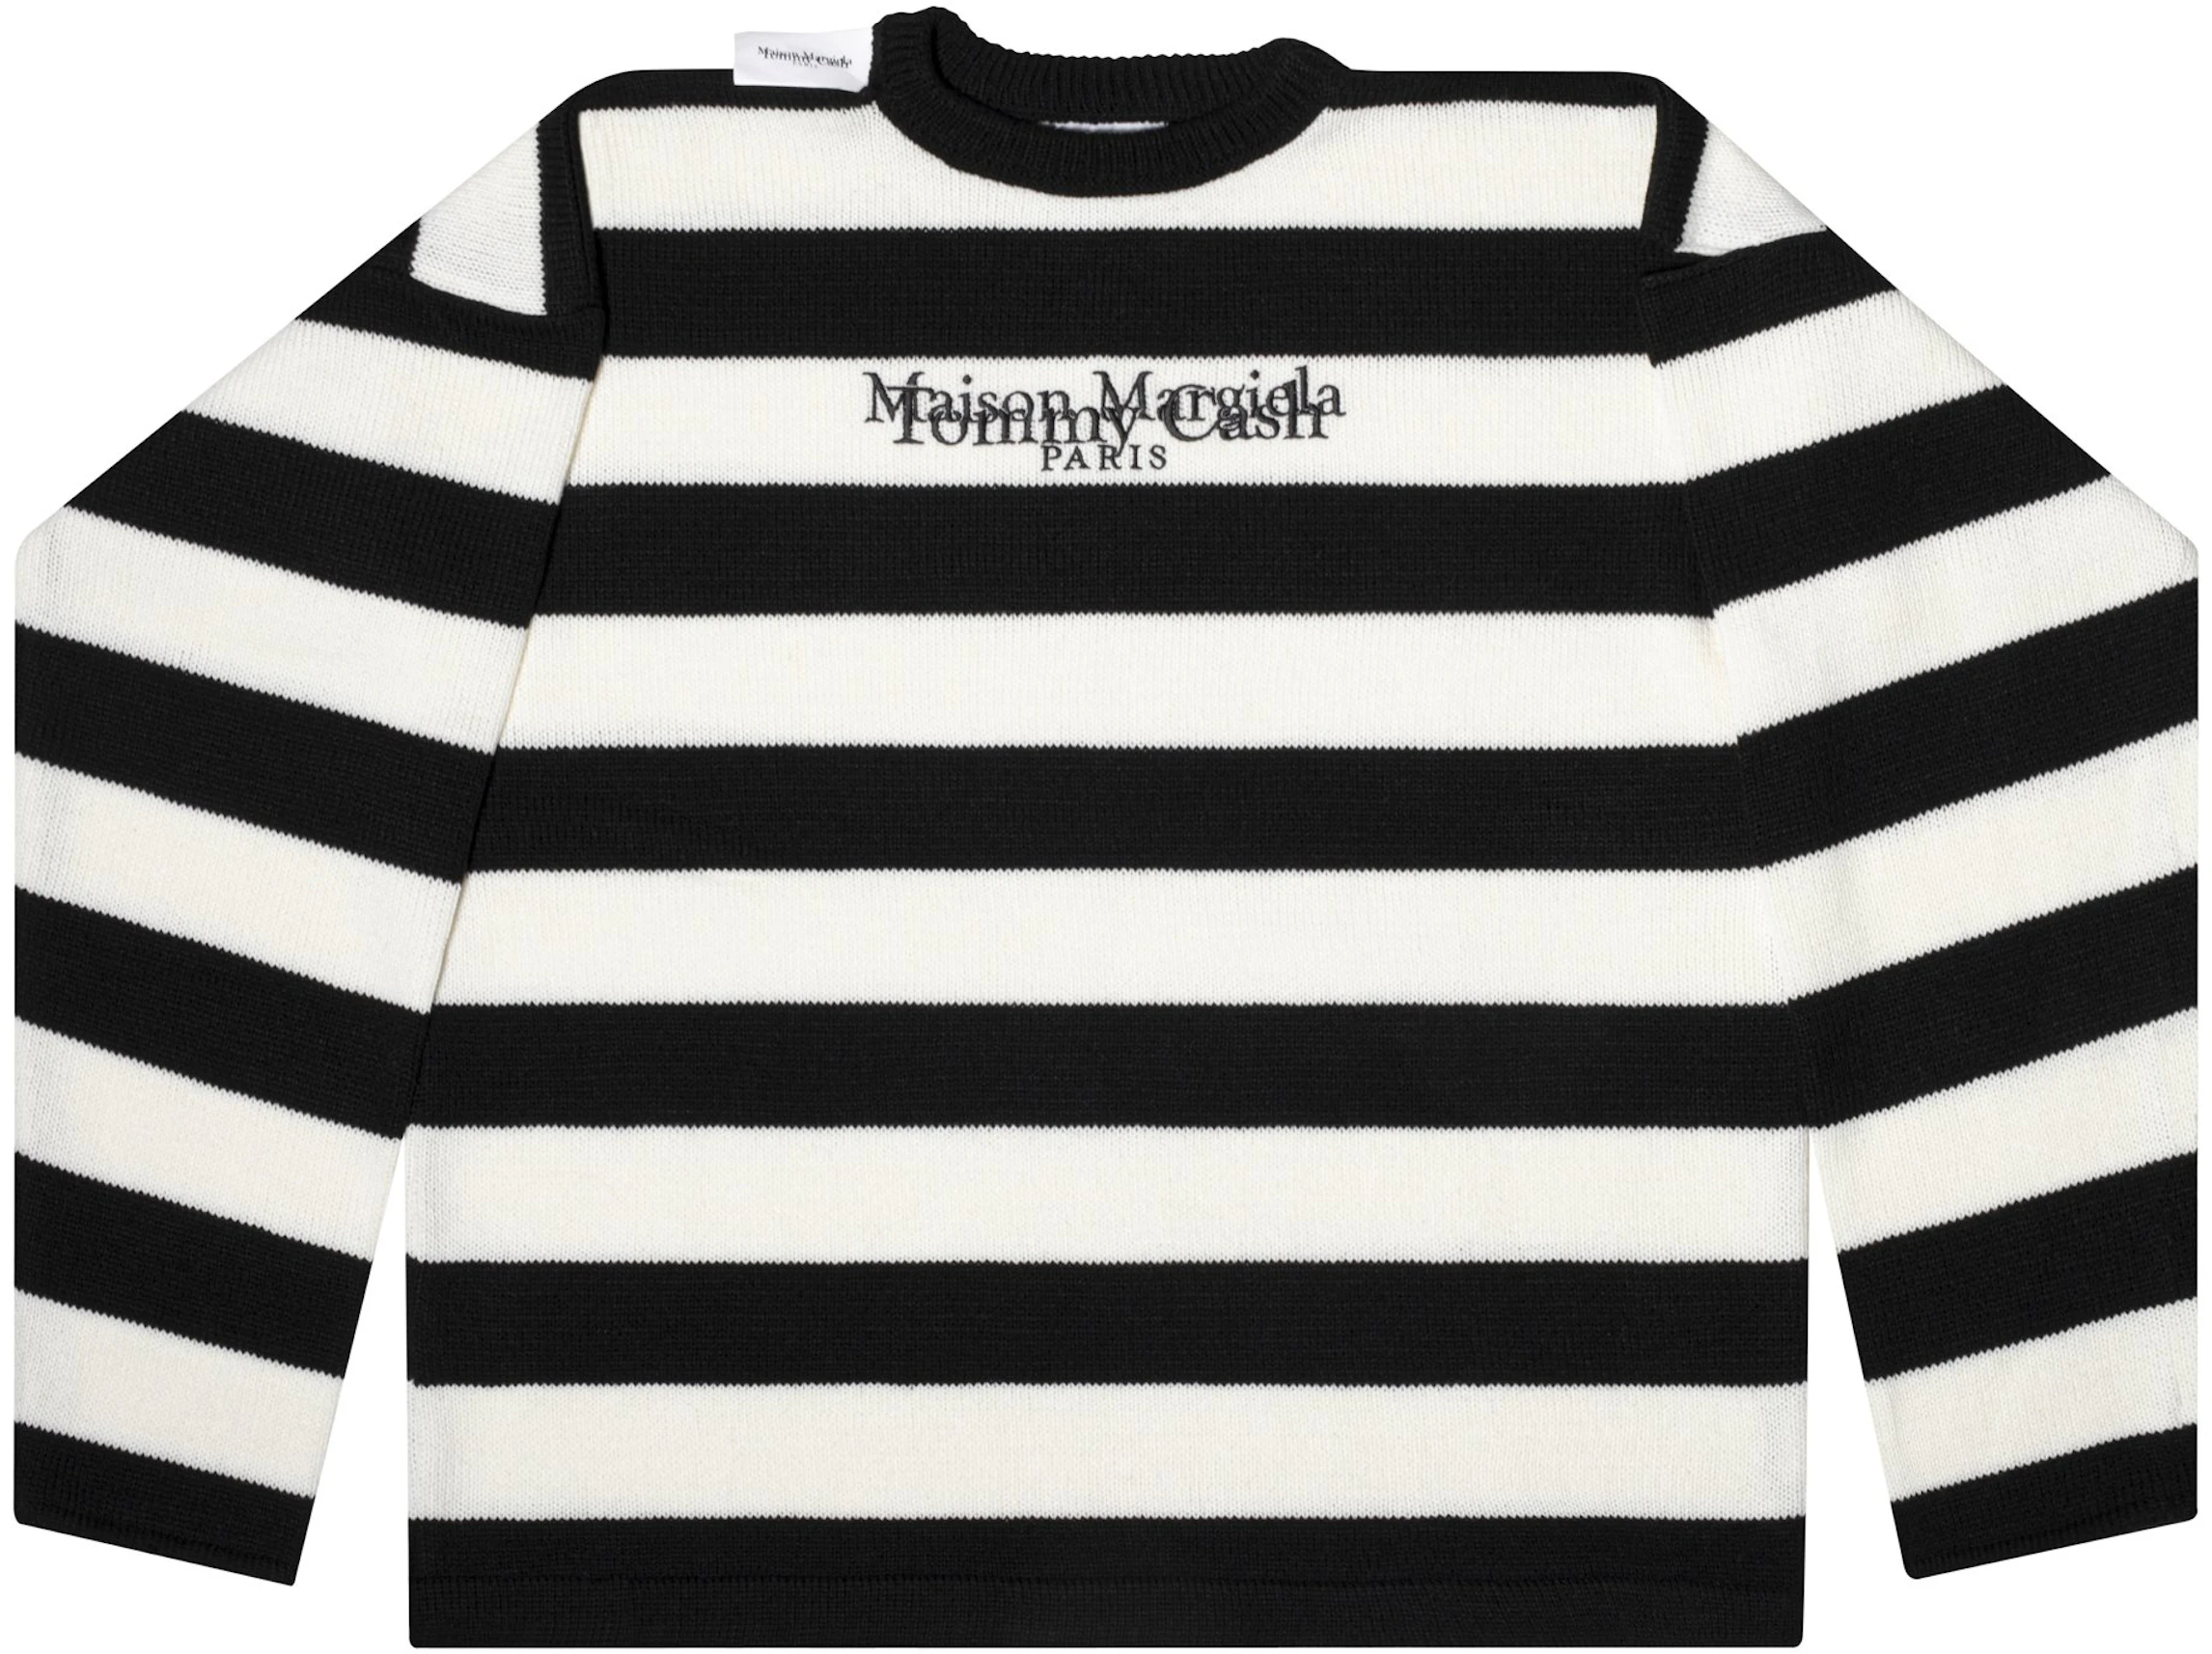 Tommy Cash X Maison Margiela Crewneck Sweater Black Ss21 Us